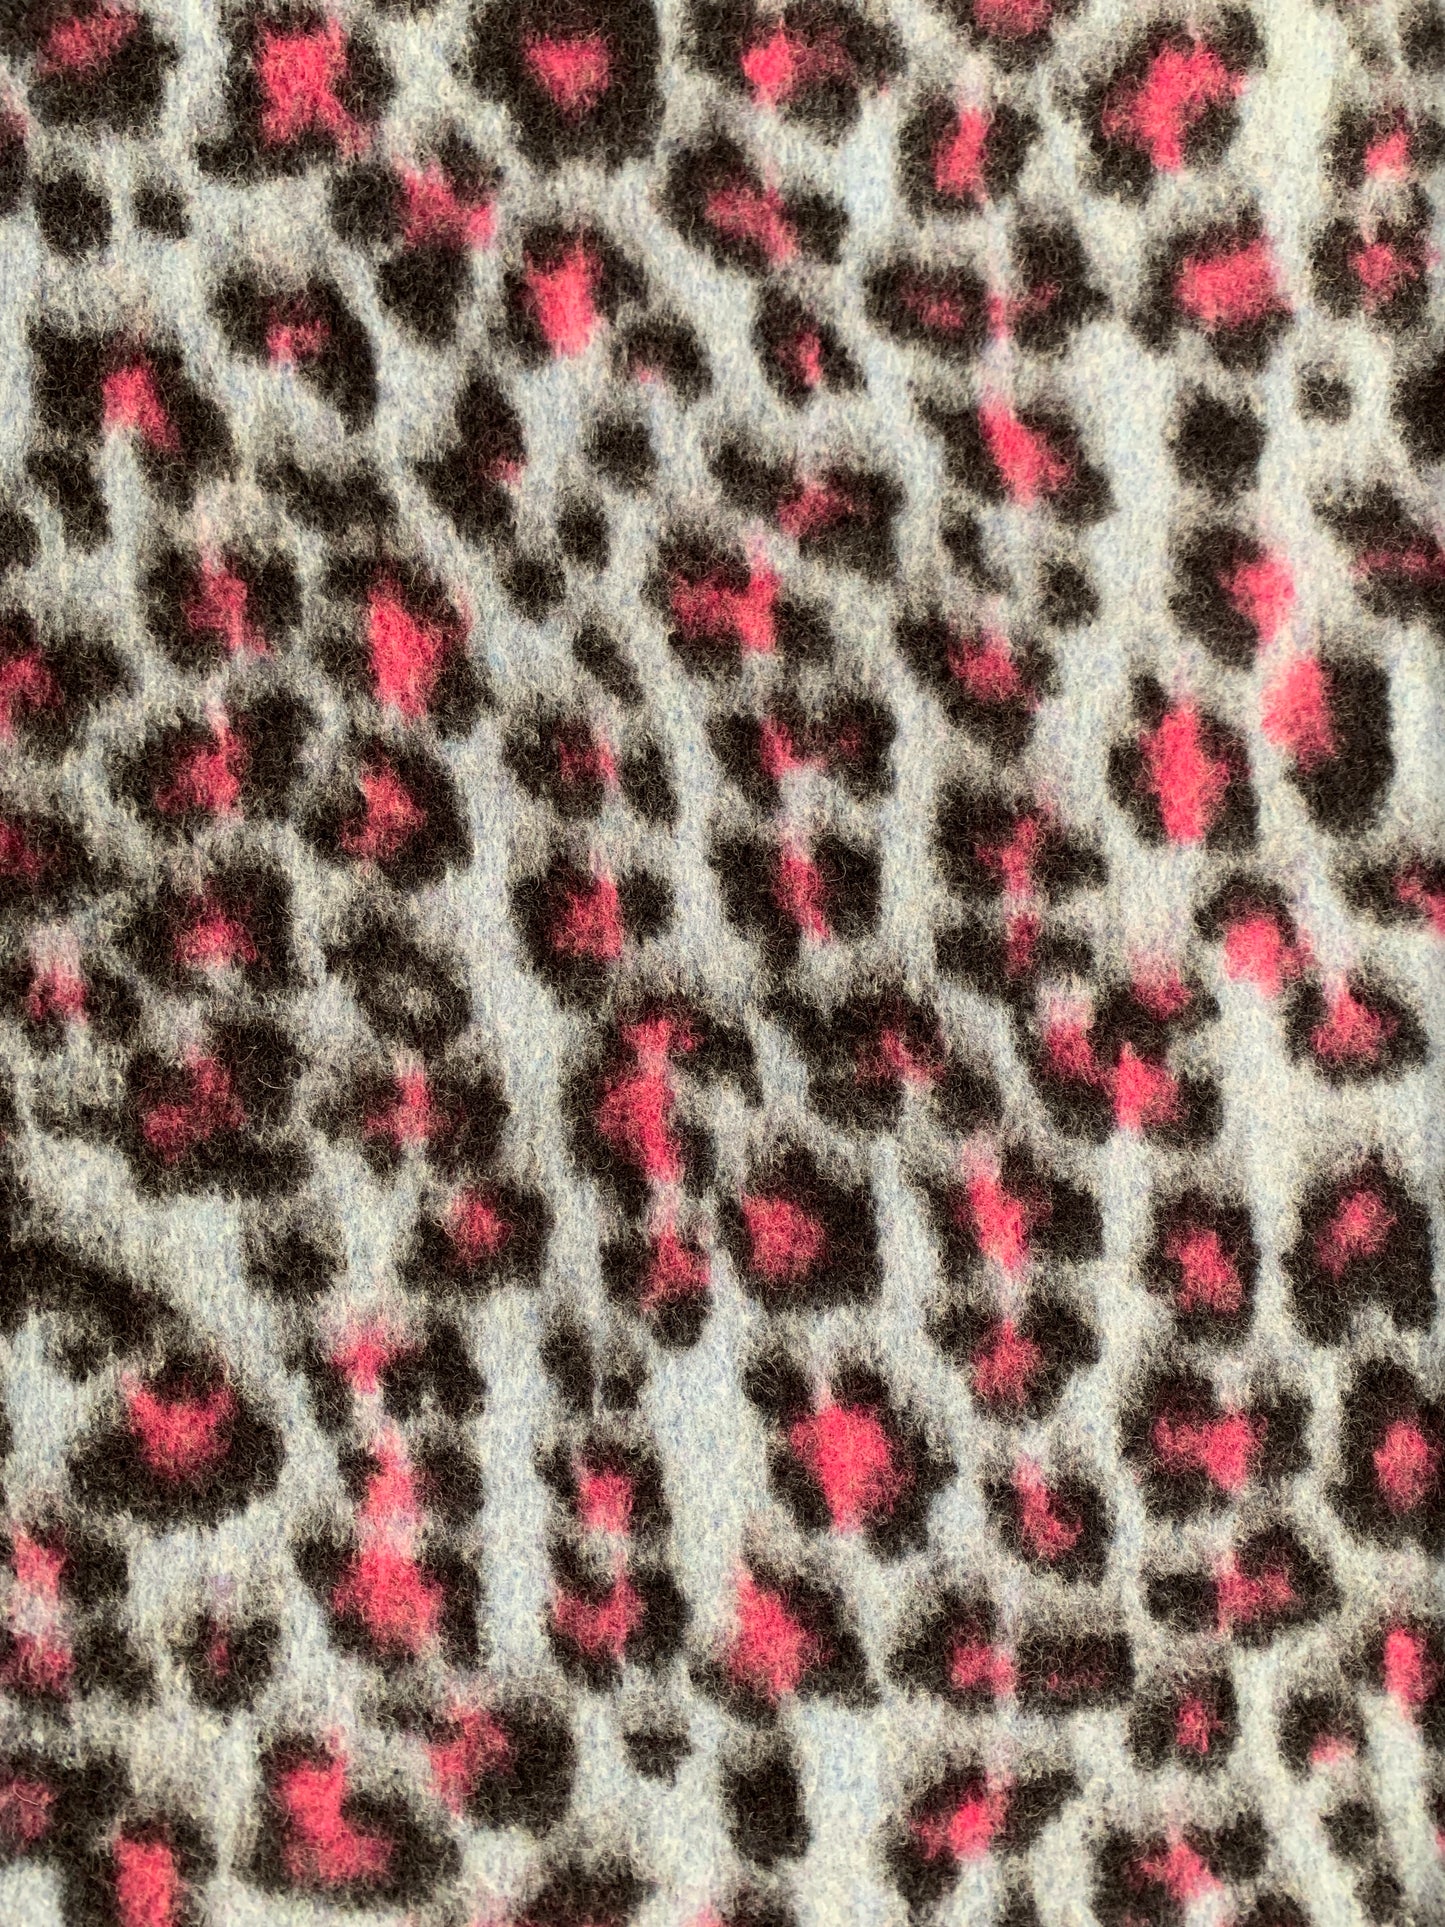 Blátt, pink og svart leopard